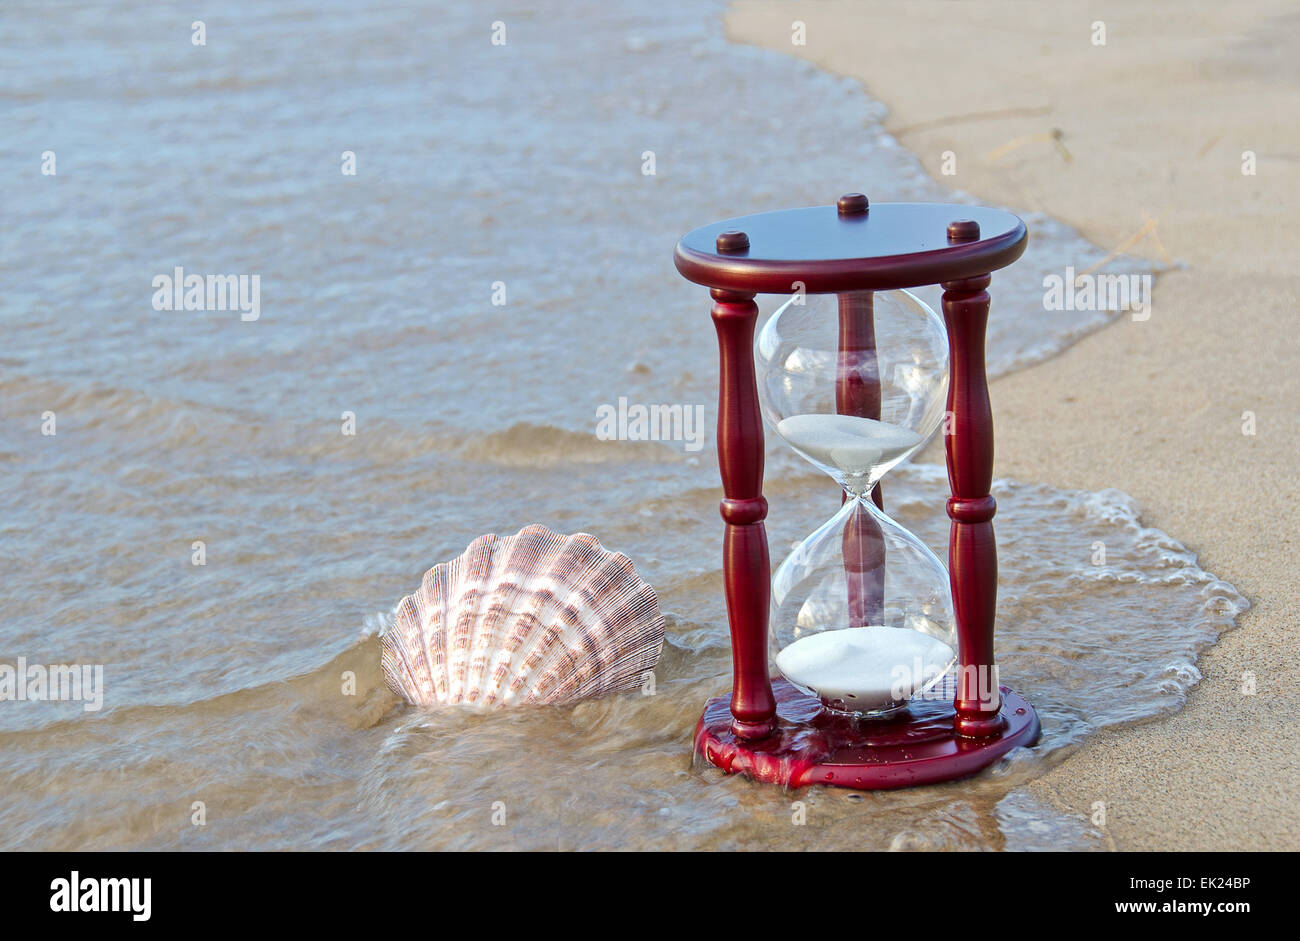 Guilhemroux avec minuterie de sable sur une plage. Banque D'Images